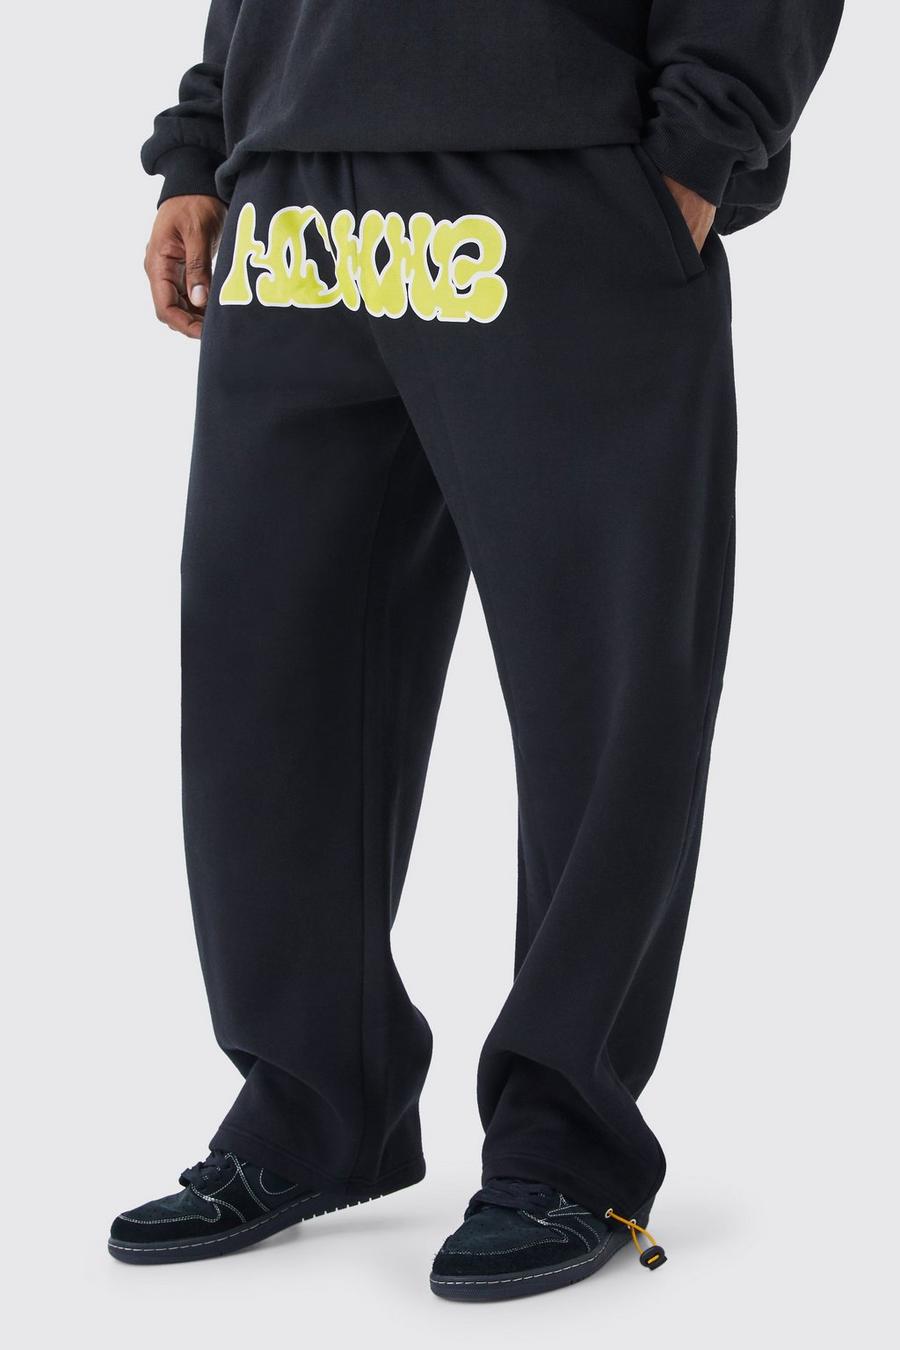 Selected Homme - Pantalon de jogging large - Noir